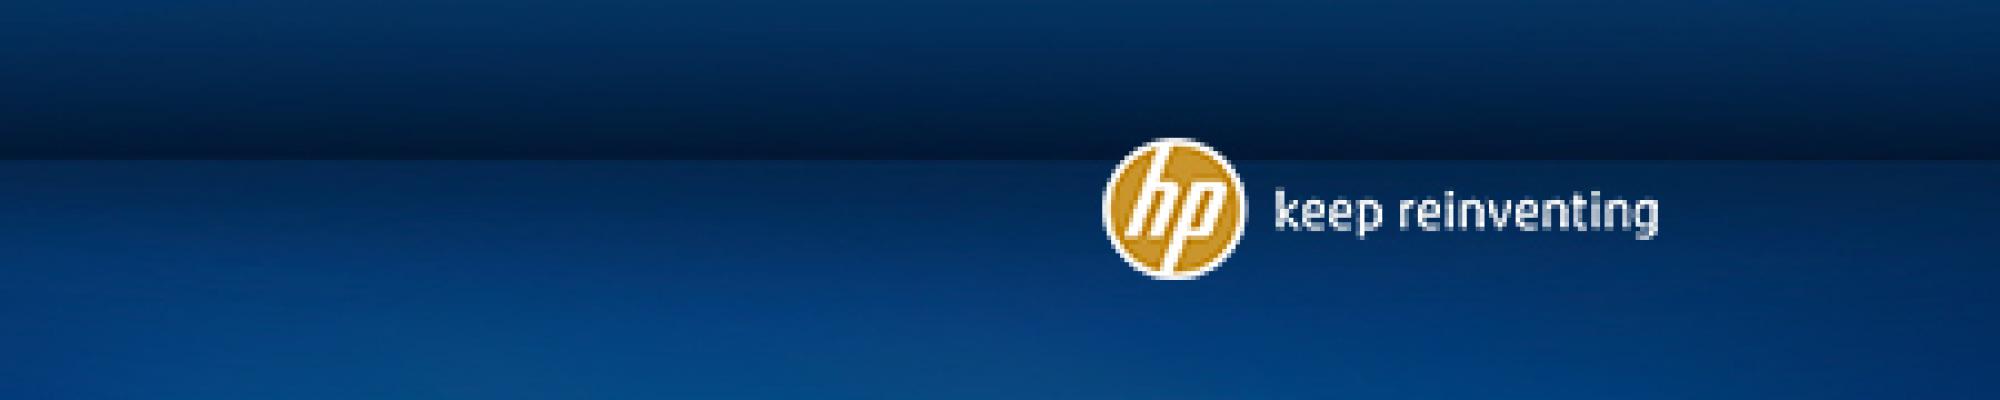 Tot drie jaar zorgeloos printen bij gebruik van originele HP supplies!